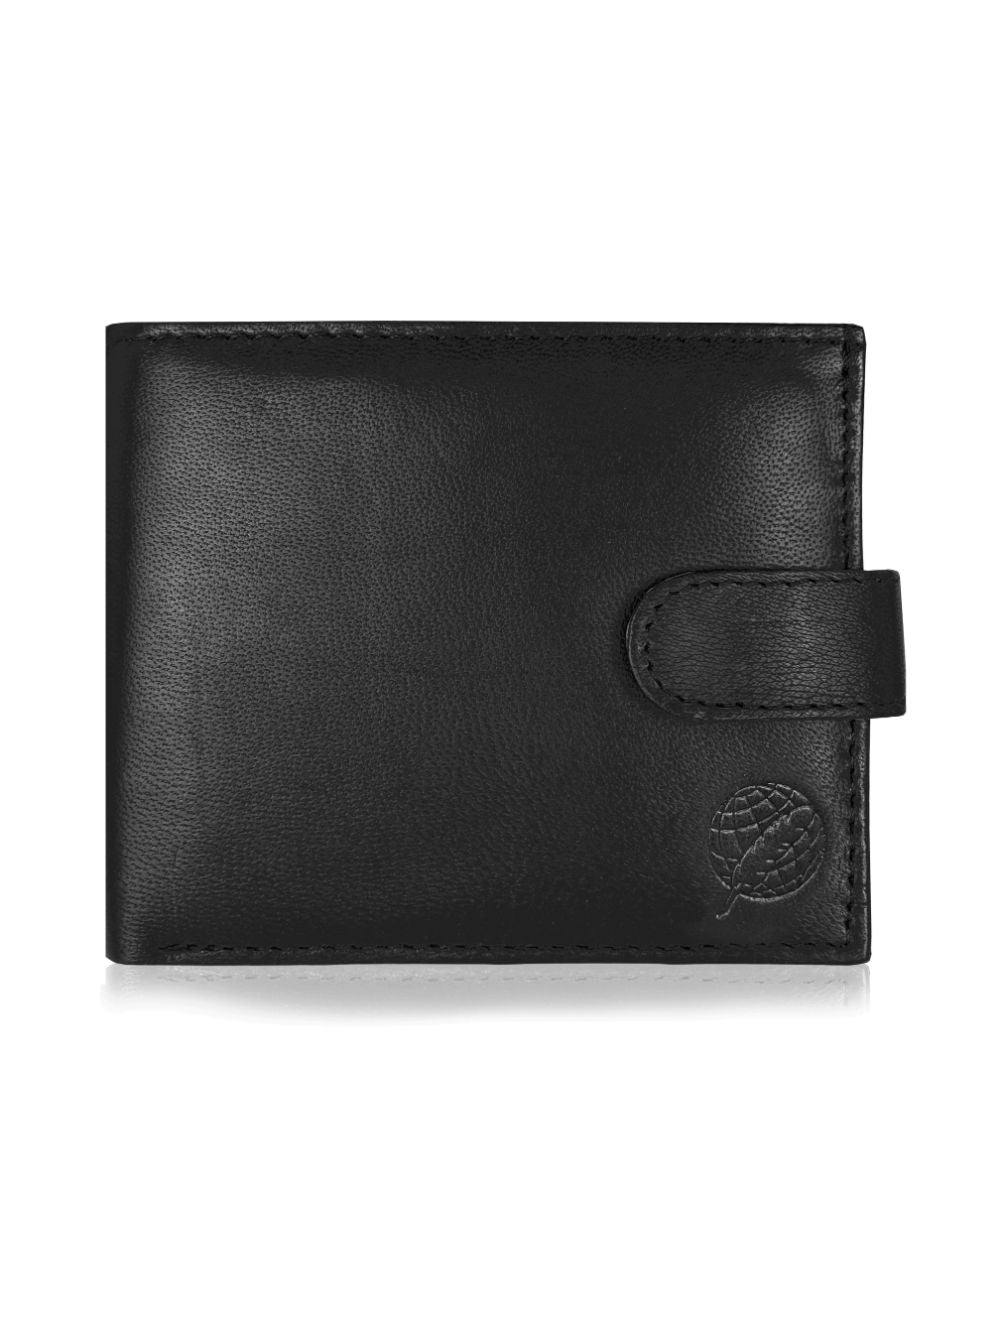 Roamlite Mens wallet black leather rl180 front